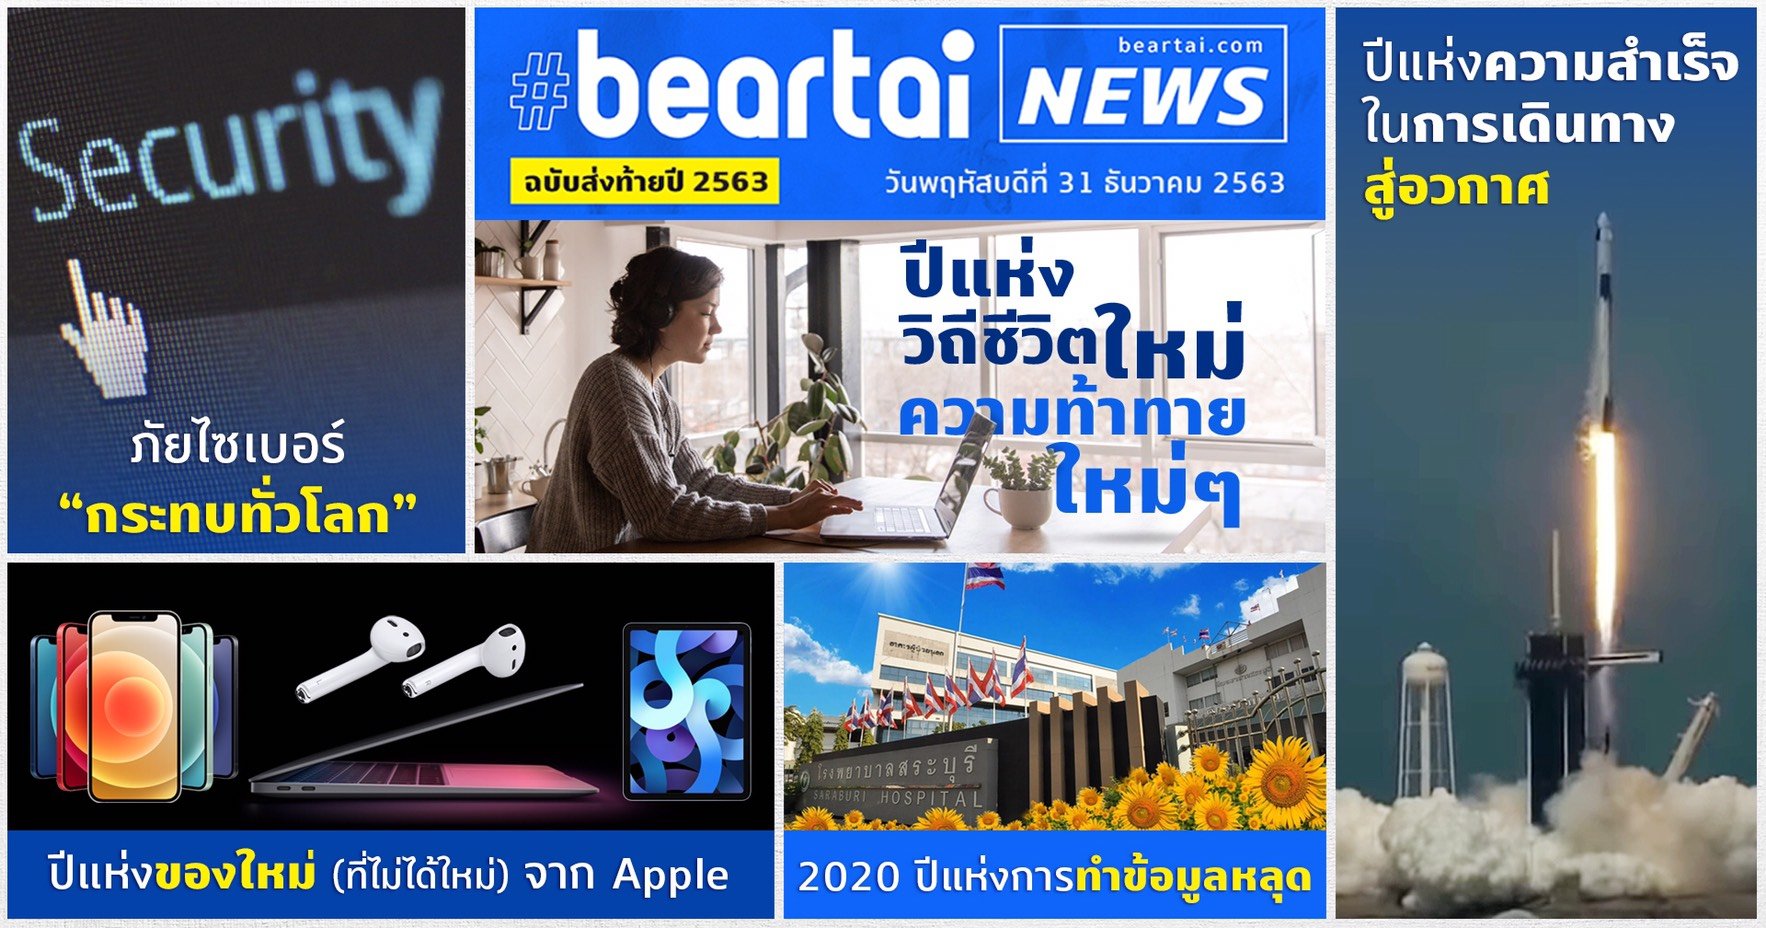 ข่าวแห่งปี 2020 ที่ส่งผลกระทบในเชิงเทคโนโลยีจาก #beartai เราคัดมาให้อ่านแล้ว